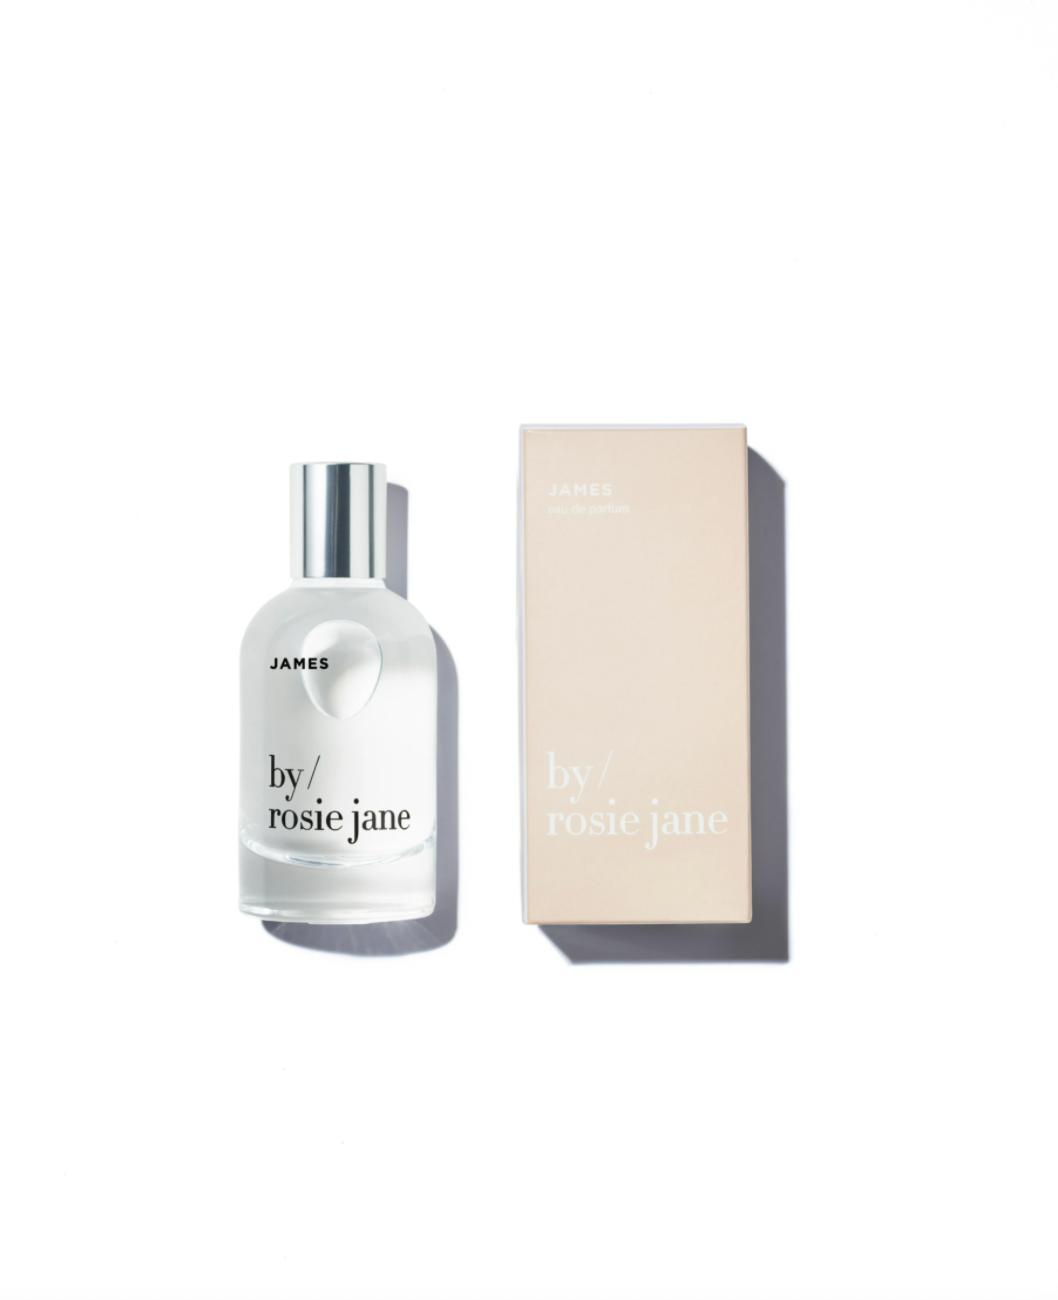 by rosie jane / eau de parfum - james